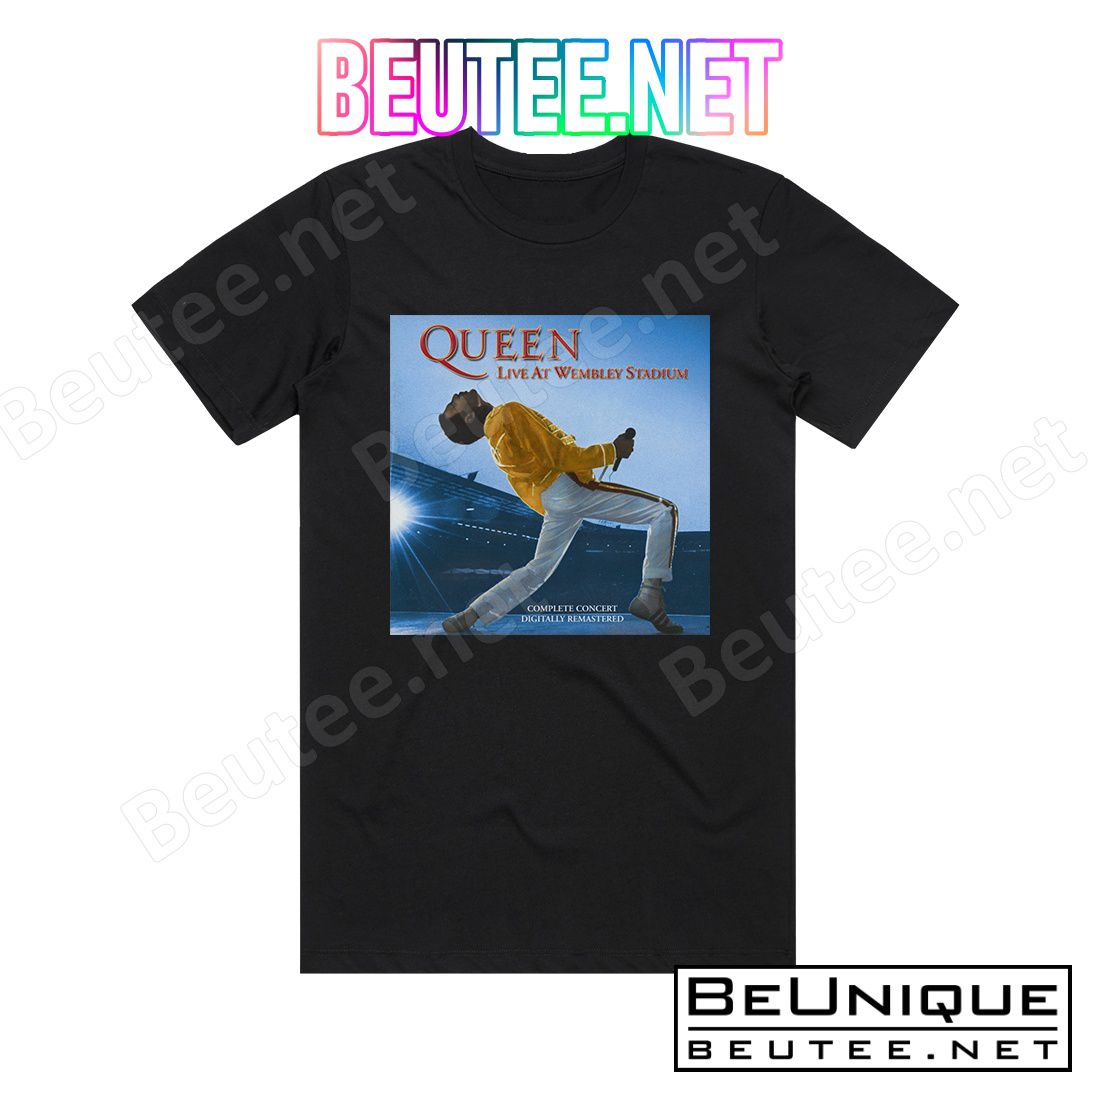 Queen Live At Wembley 86 1 Album Cover T-Shirt